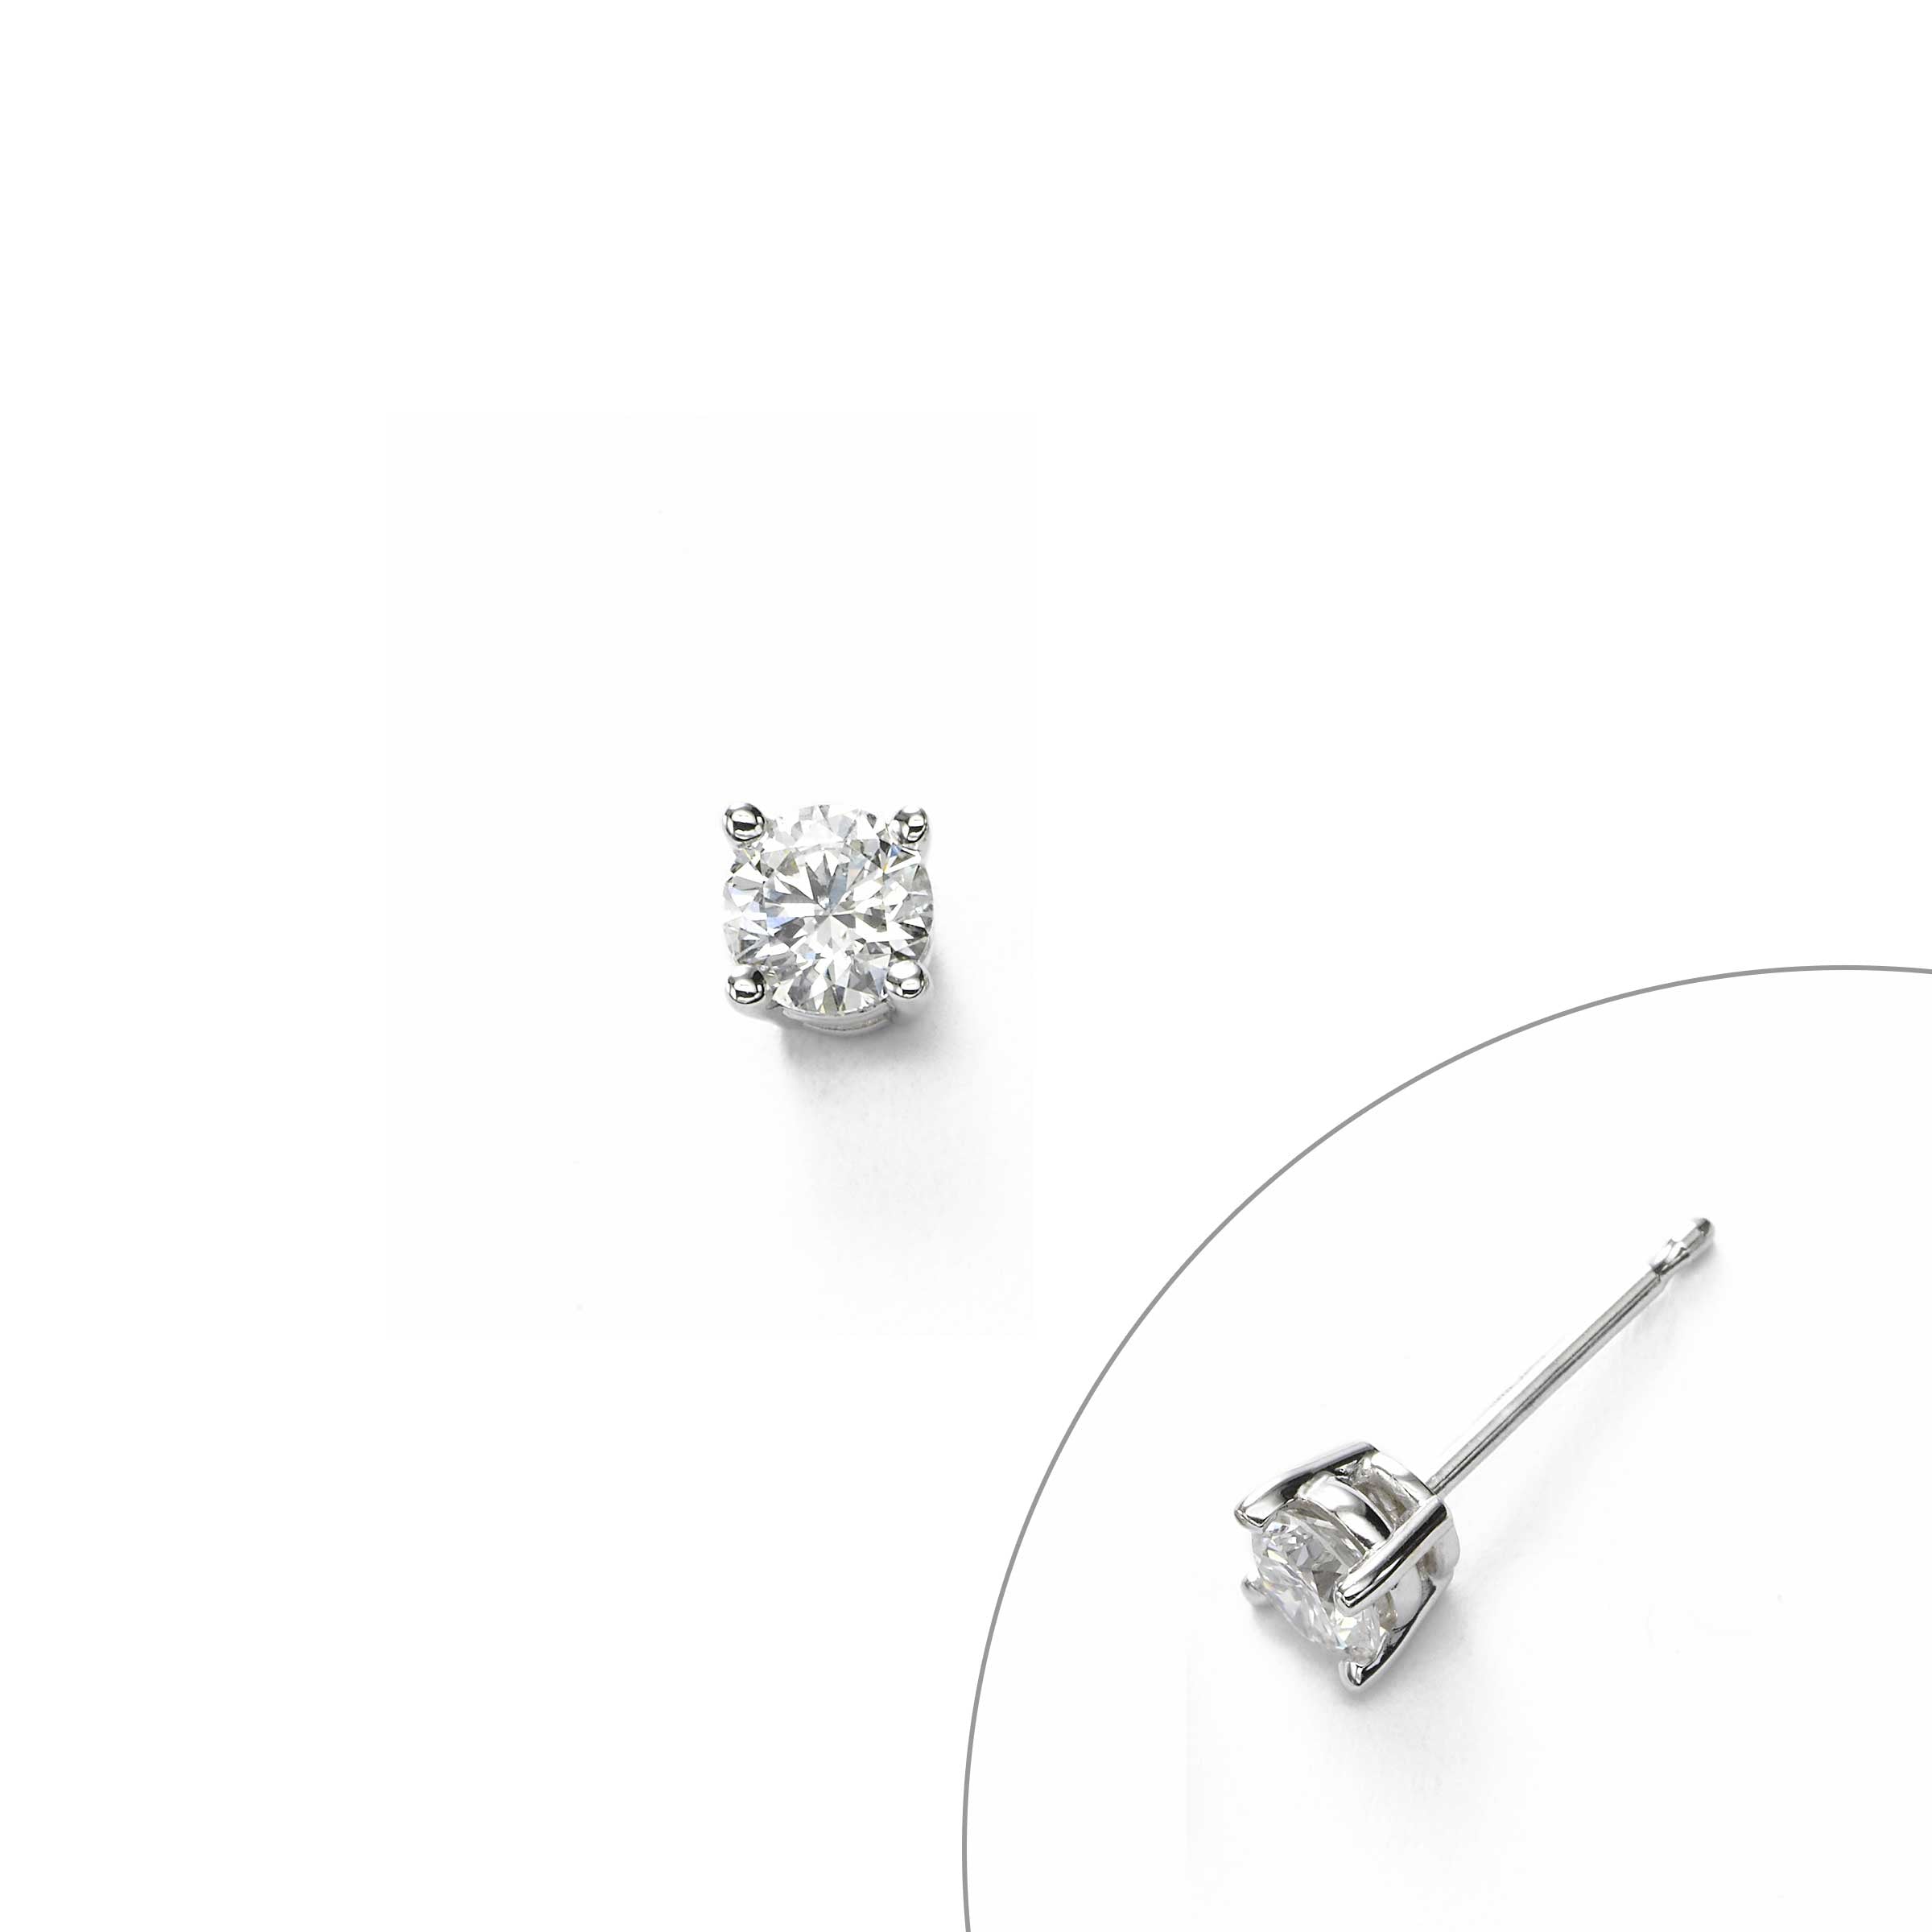 10 Carat Aquamarine Diamond 18 Karat Gold Earrings - Ruby Lane